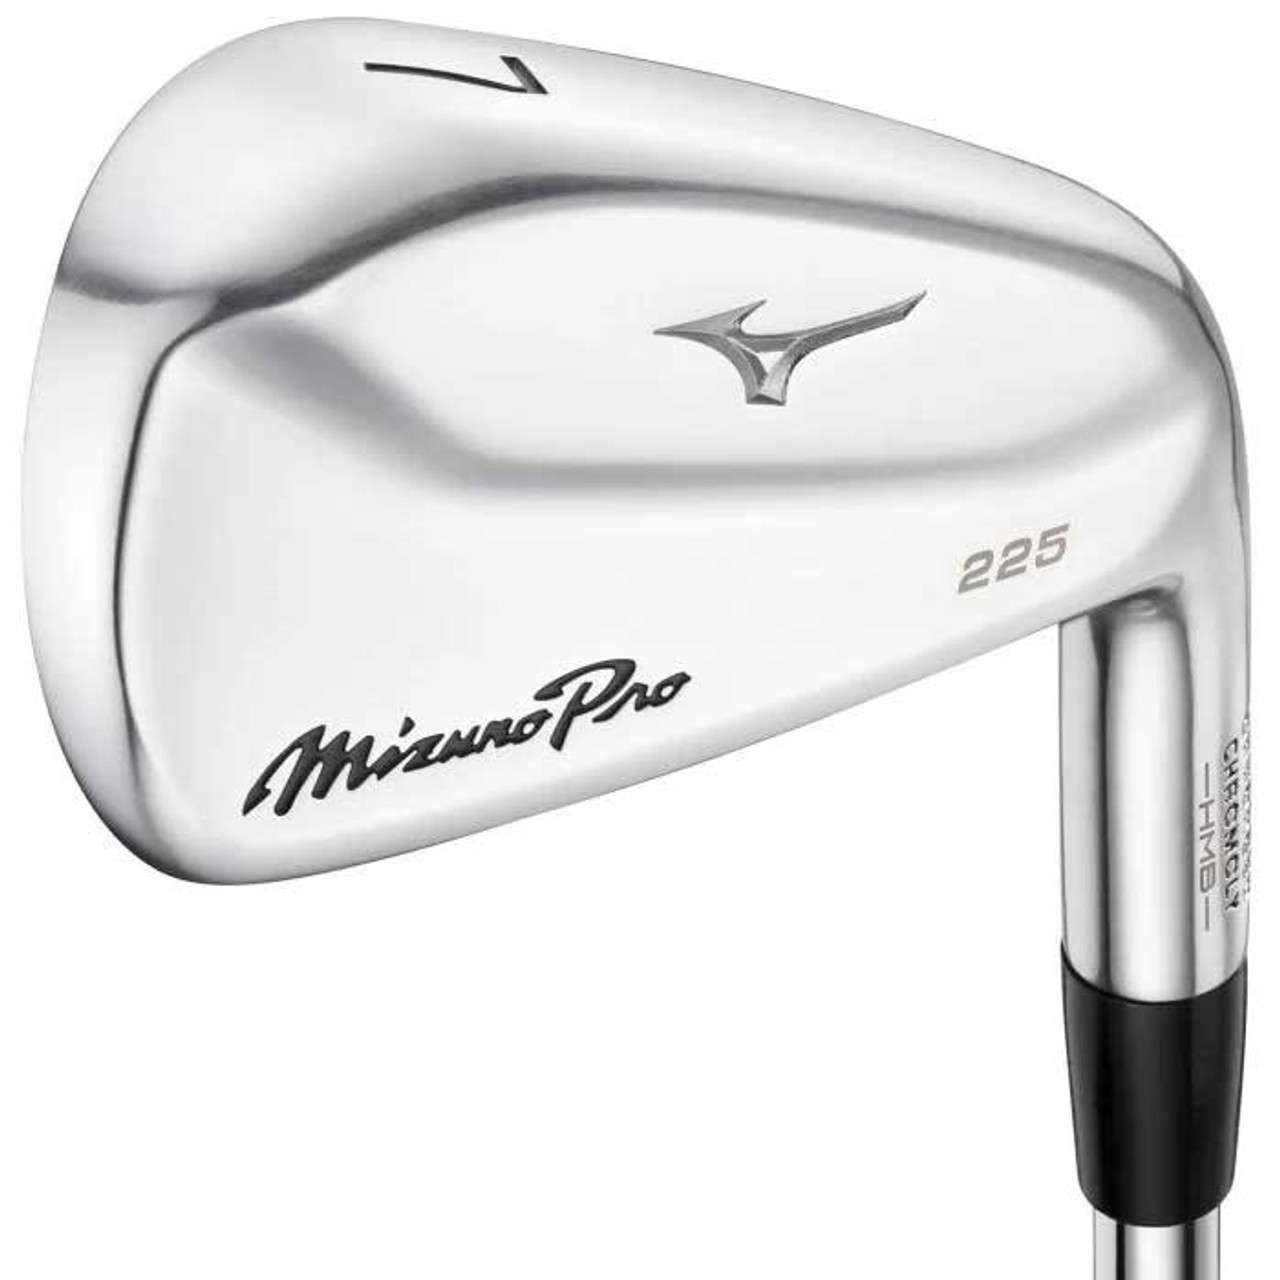 Getuigen Aanmoediging doolhof New Mizuno Pro 225 Irons - Dallas Golf Company